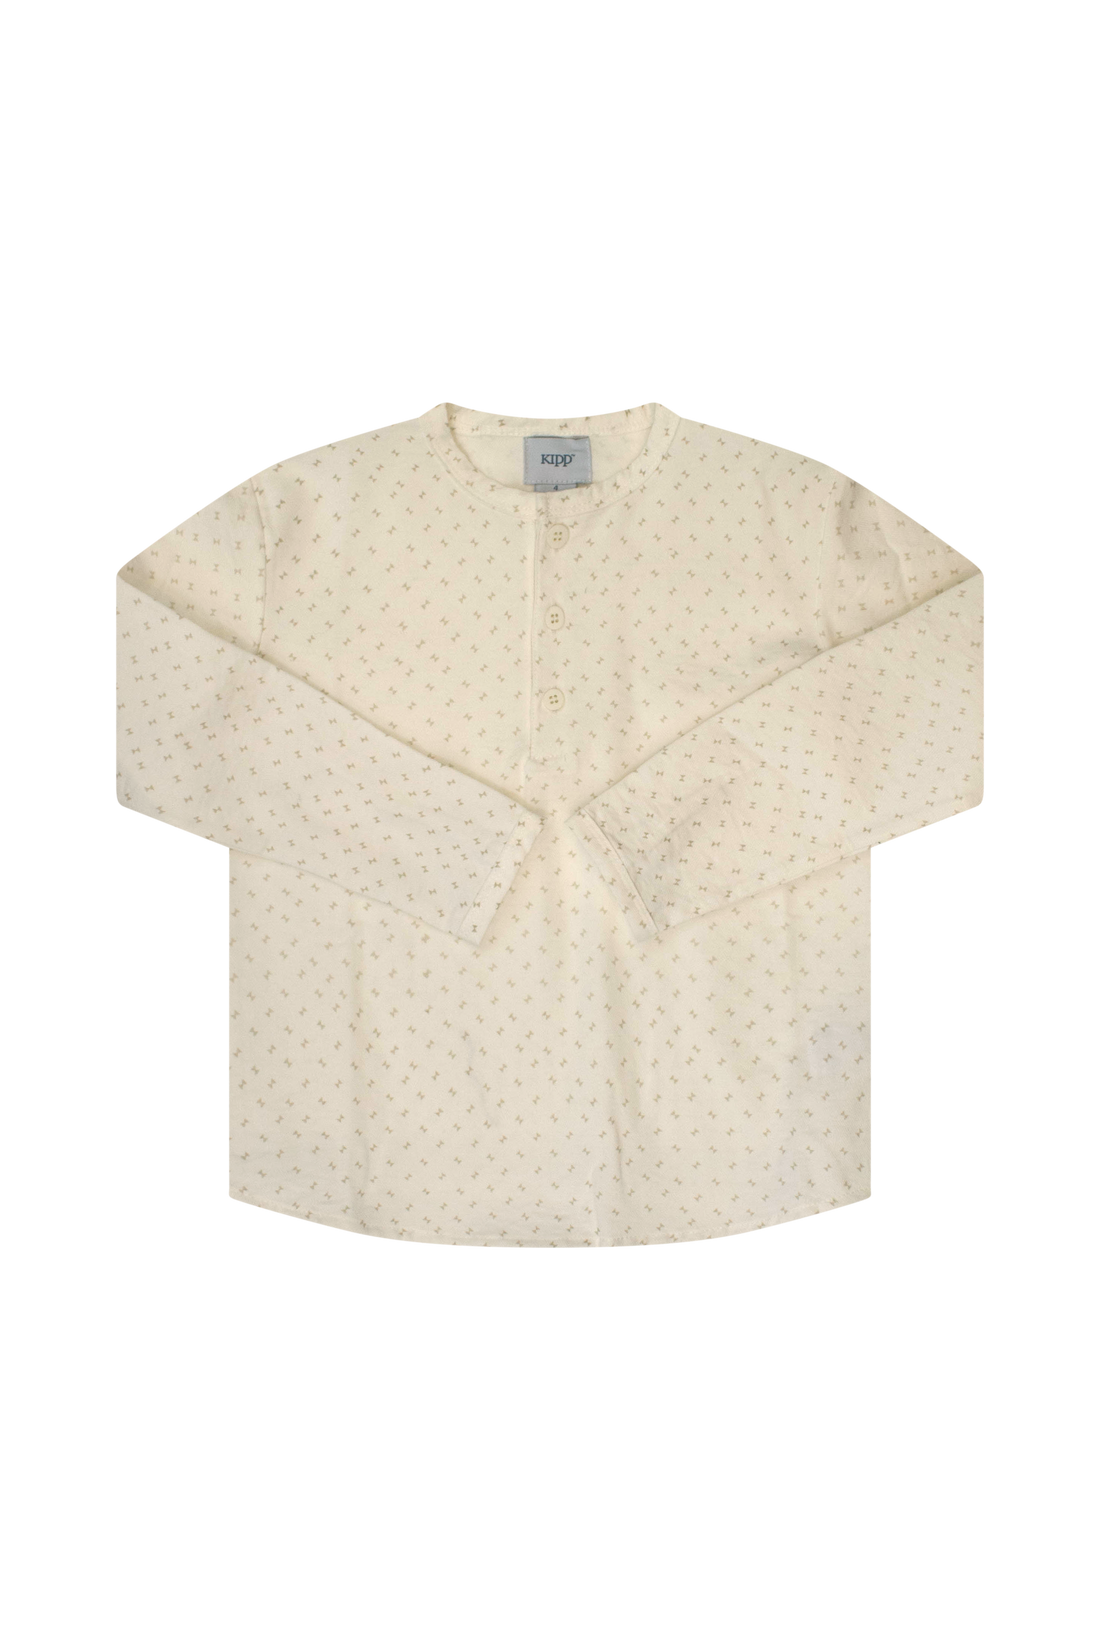 Kipp White Twill Shirt